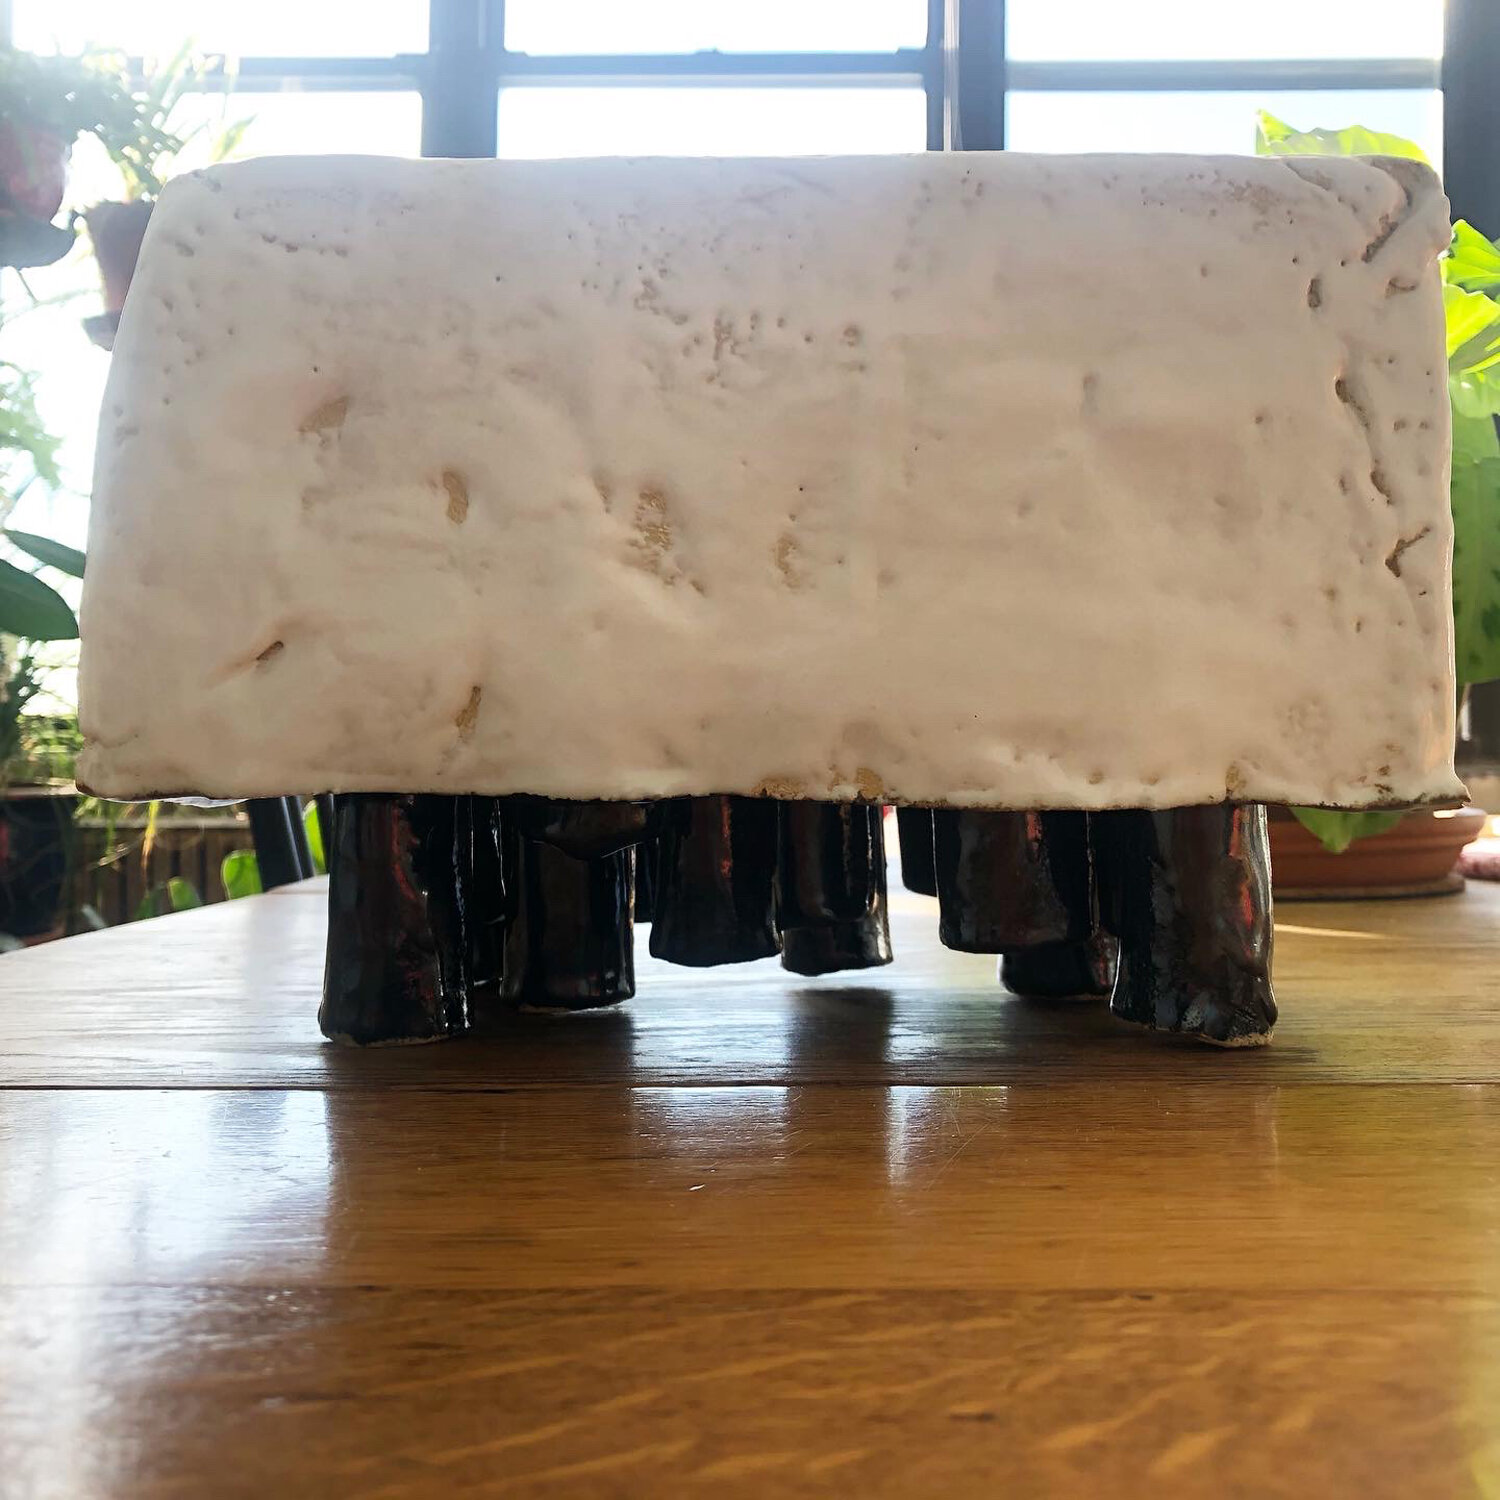 Funerary Box with Legs, 2020, glazed ceramic, 7 1/4 x 10 1/4 x 6 3/4"